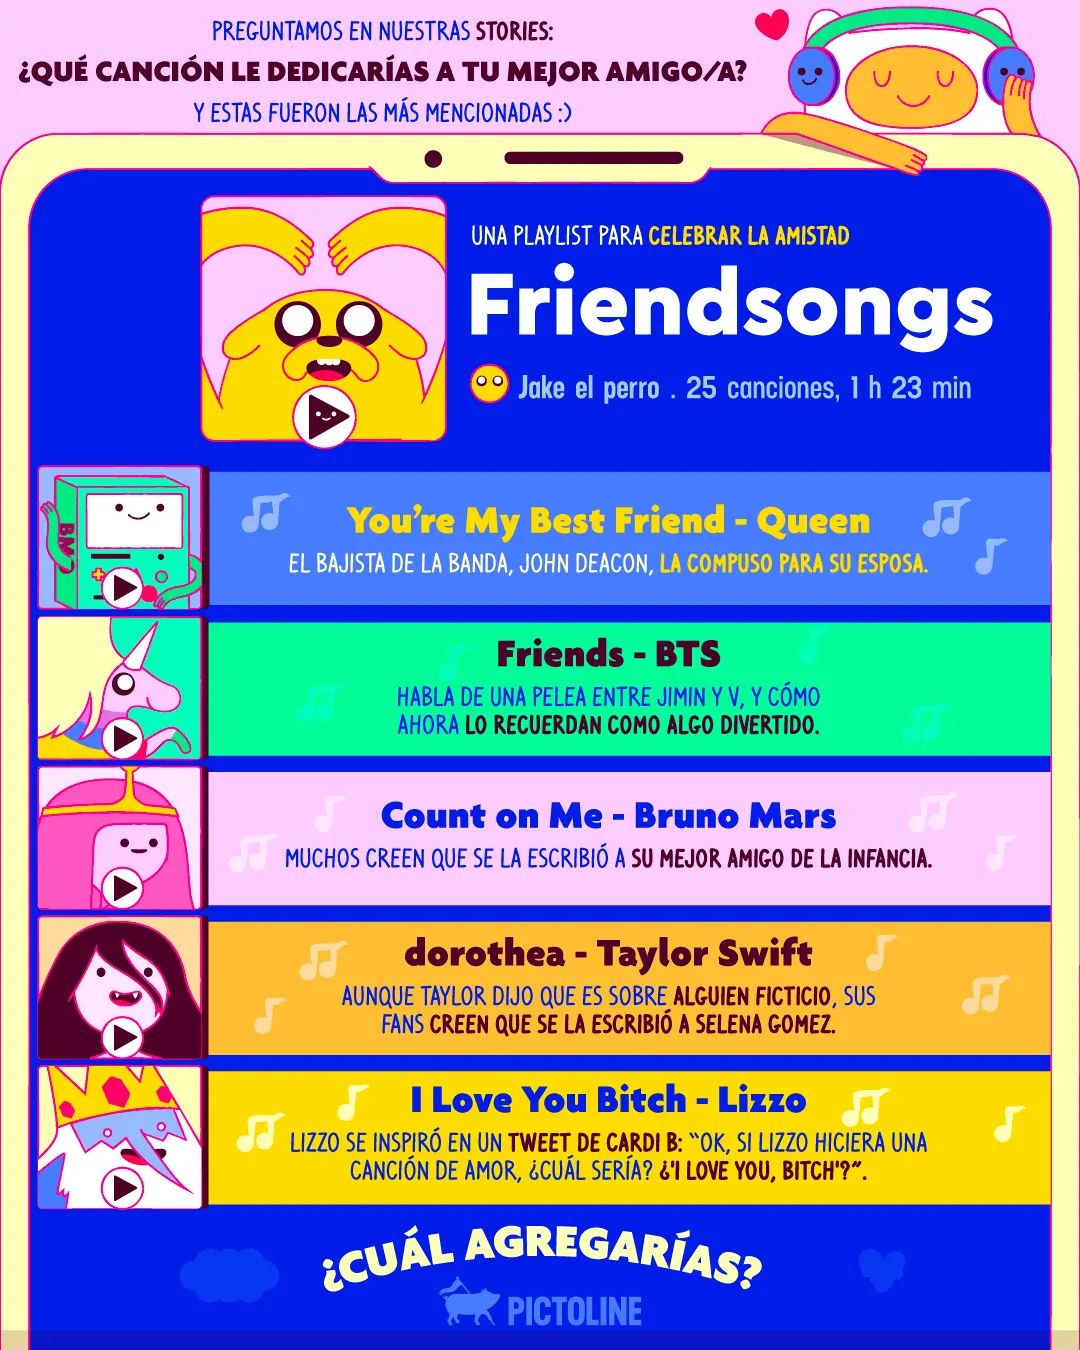 Preguntamos en nuestras stories: 💖 ¿qué canción le dedicarías a tu mejor amigo/a? 💖 E hicimos una playlist con las más mencionadas para que celebren juntos/as 🥰 #lizzo #taylorswift #friends #playlist #songs #BTS